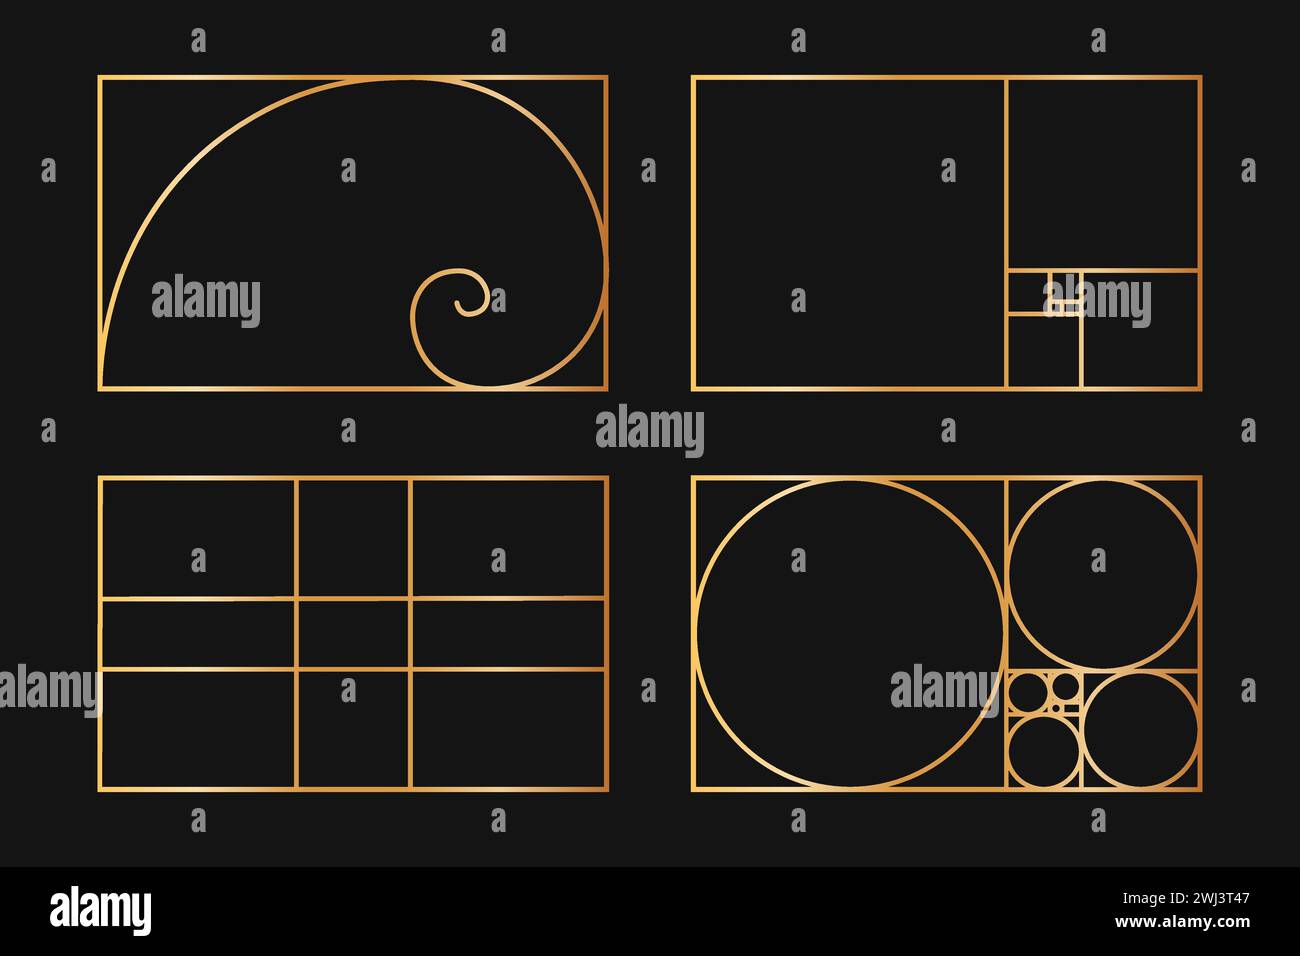 Sammlung von Golden Ratio-Vorlagen. Logarithmische Spirale. Fibonacci-Sequenz als rechteckige Rahmen, die auf Linien, Quadrate und Kreise aufgeteilt sind. Perfekte Natur Symmetrie Proportionen Raster. Vektorabbildung Stock Vektor